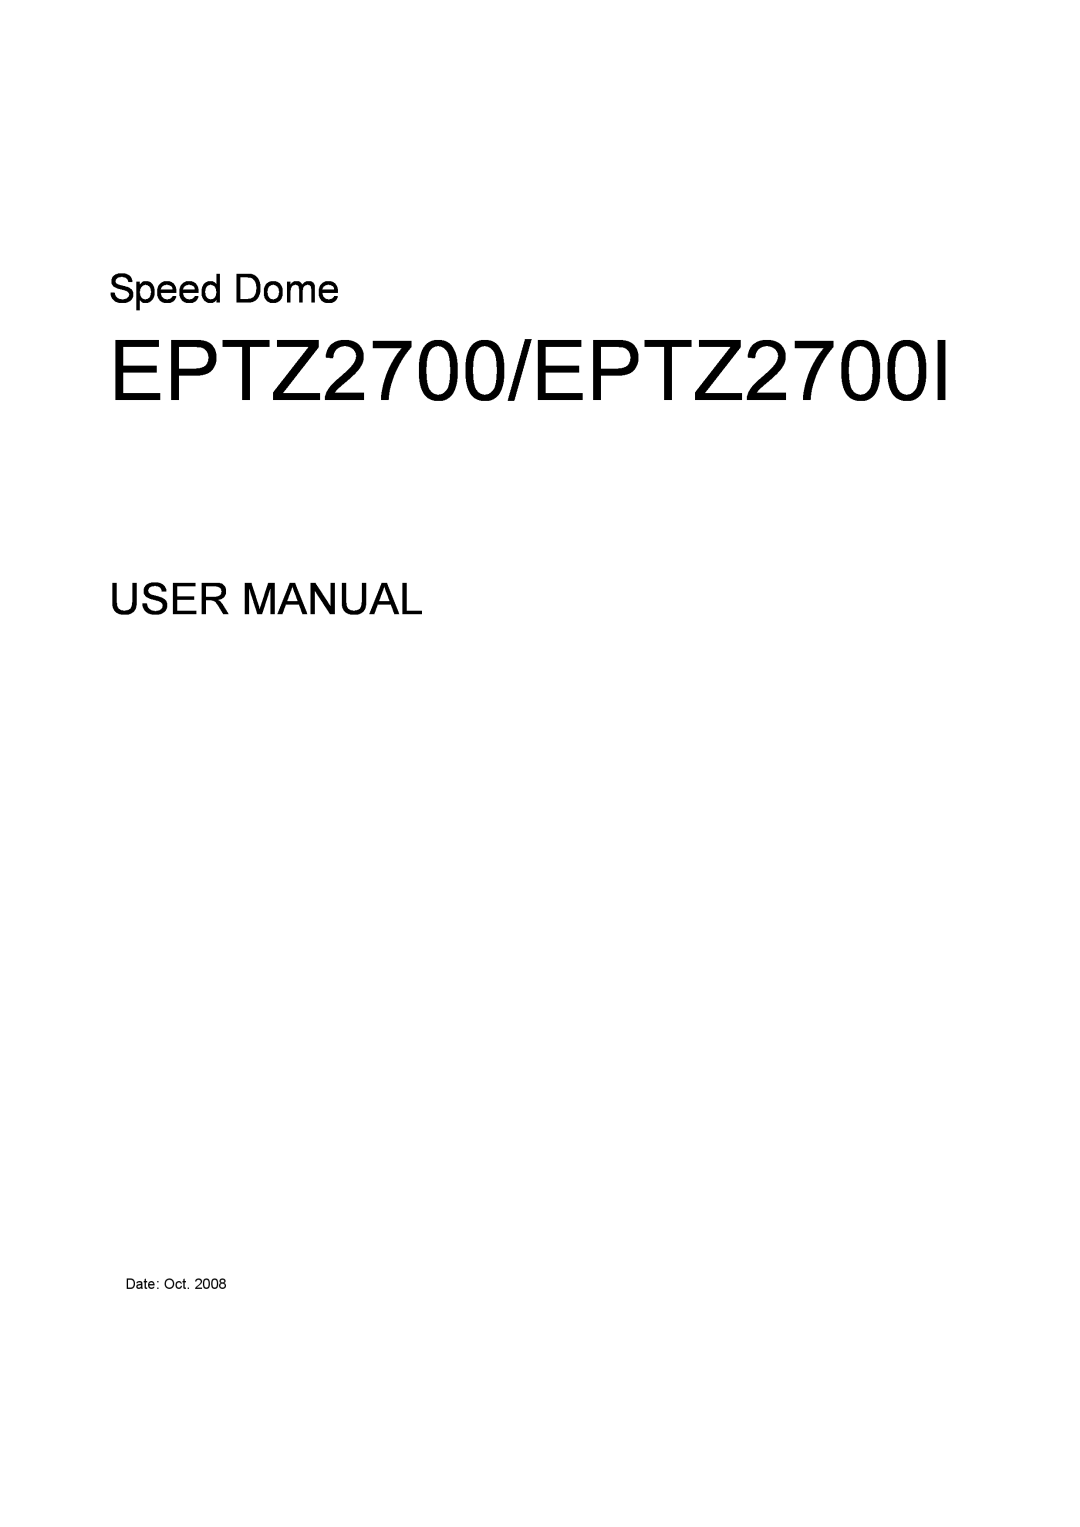 EverFocus EPTZ2700i user manual EPTZ2700/EPTZ2700I, Speed Dome 